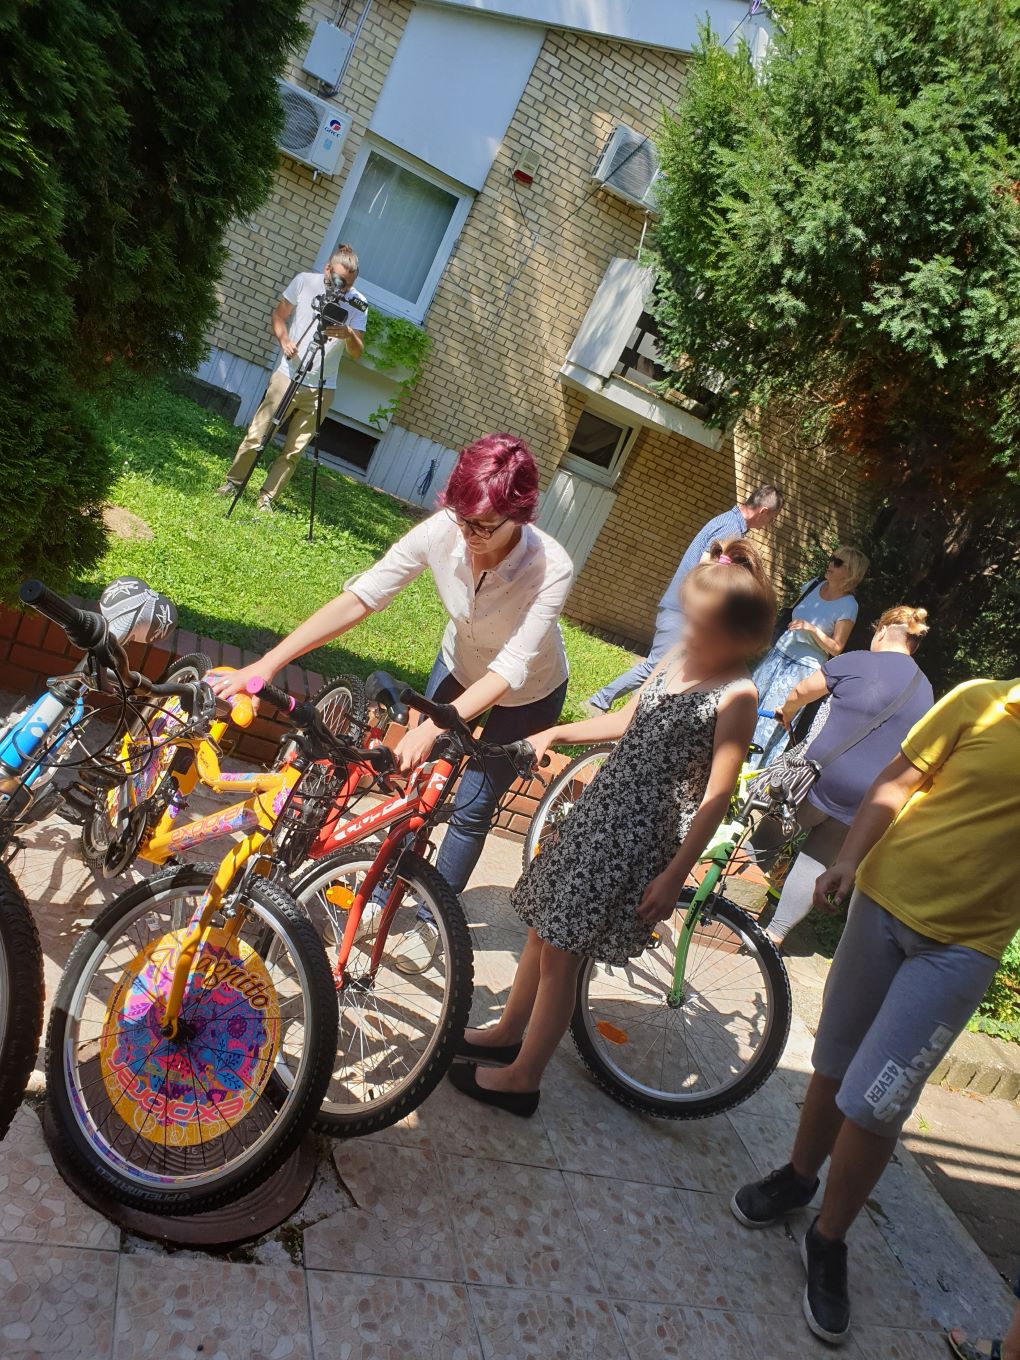 Компанија “Fanatic bike” донирала бицикле и пакете за децу на хранитељству